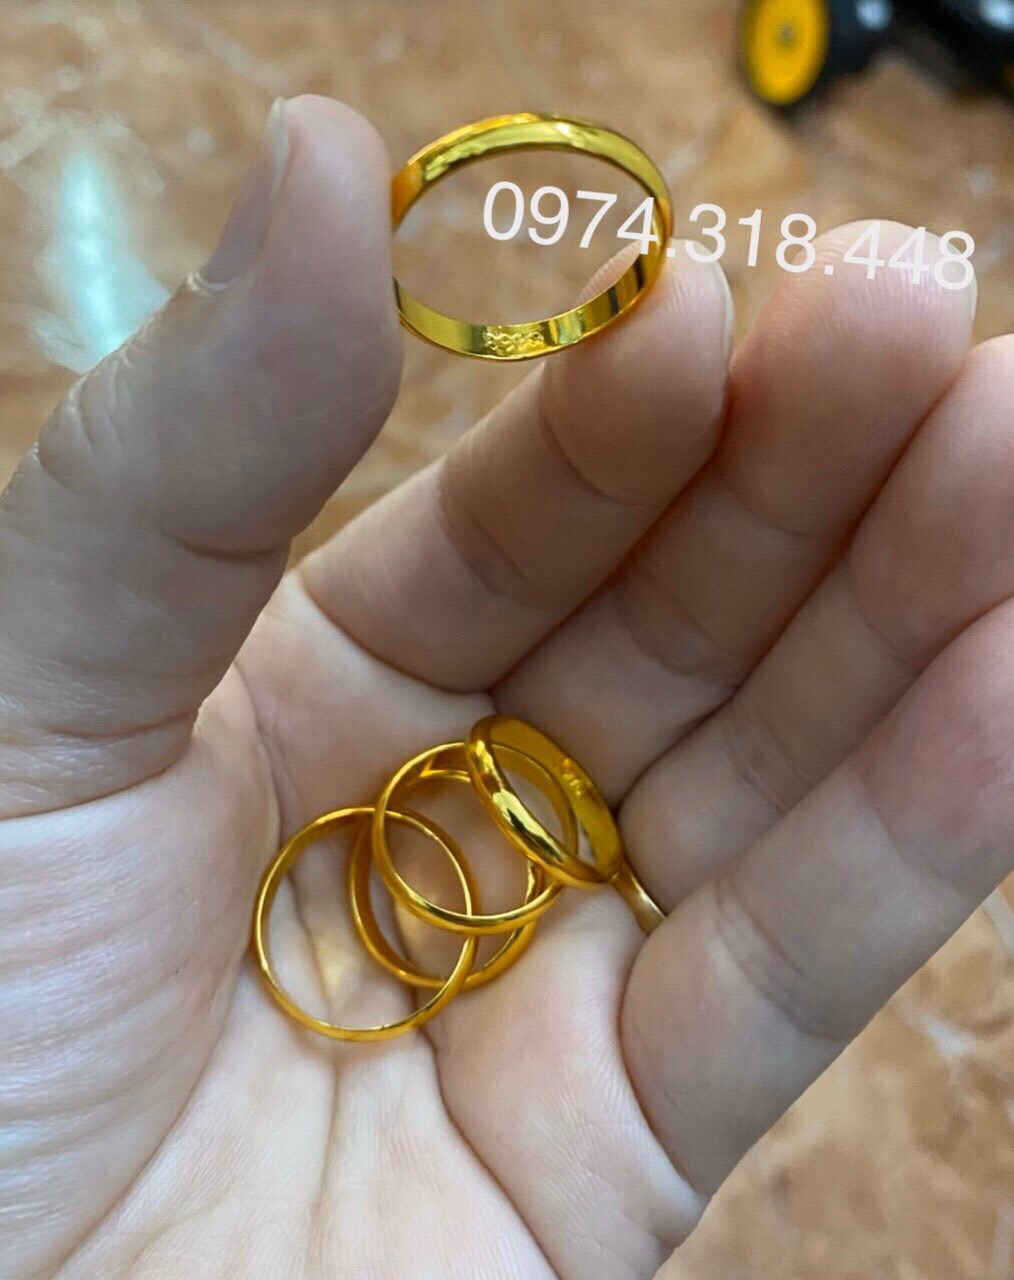 Nhẫn vàng 9999 1 chỉ giá bao nhiêu trong dịp đầu năm 2023? - Fptshop.com.vn